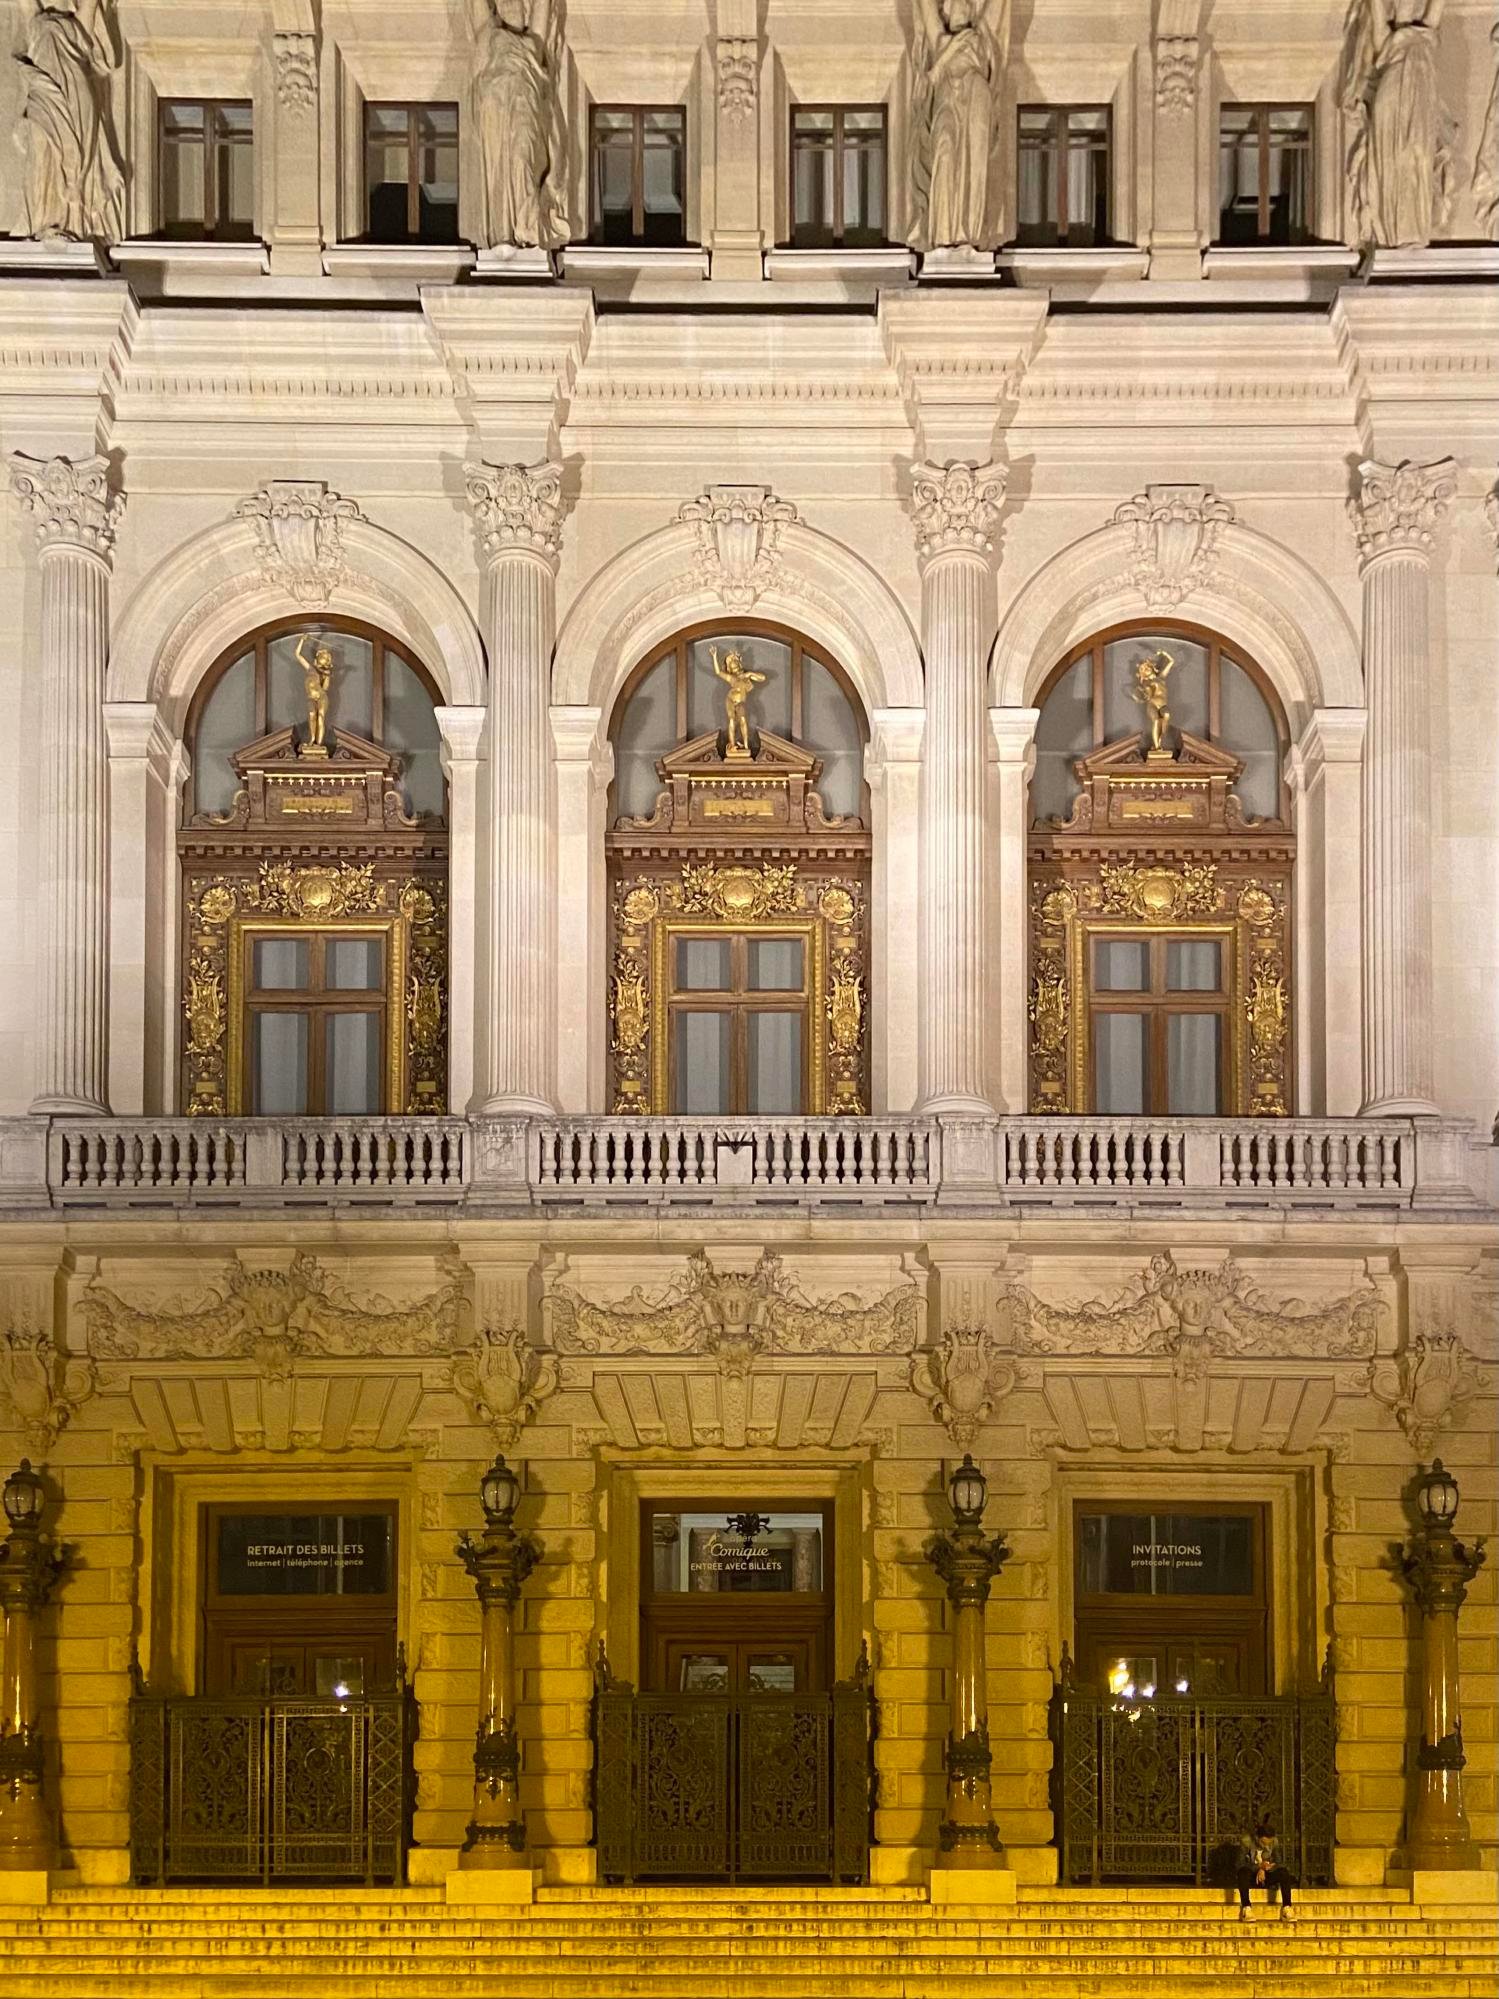 La salle favart, ou l'Opéra Comique se situe sur la place Boieldieu, derrière l'Hôtel Gramont Paris